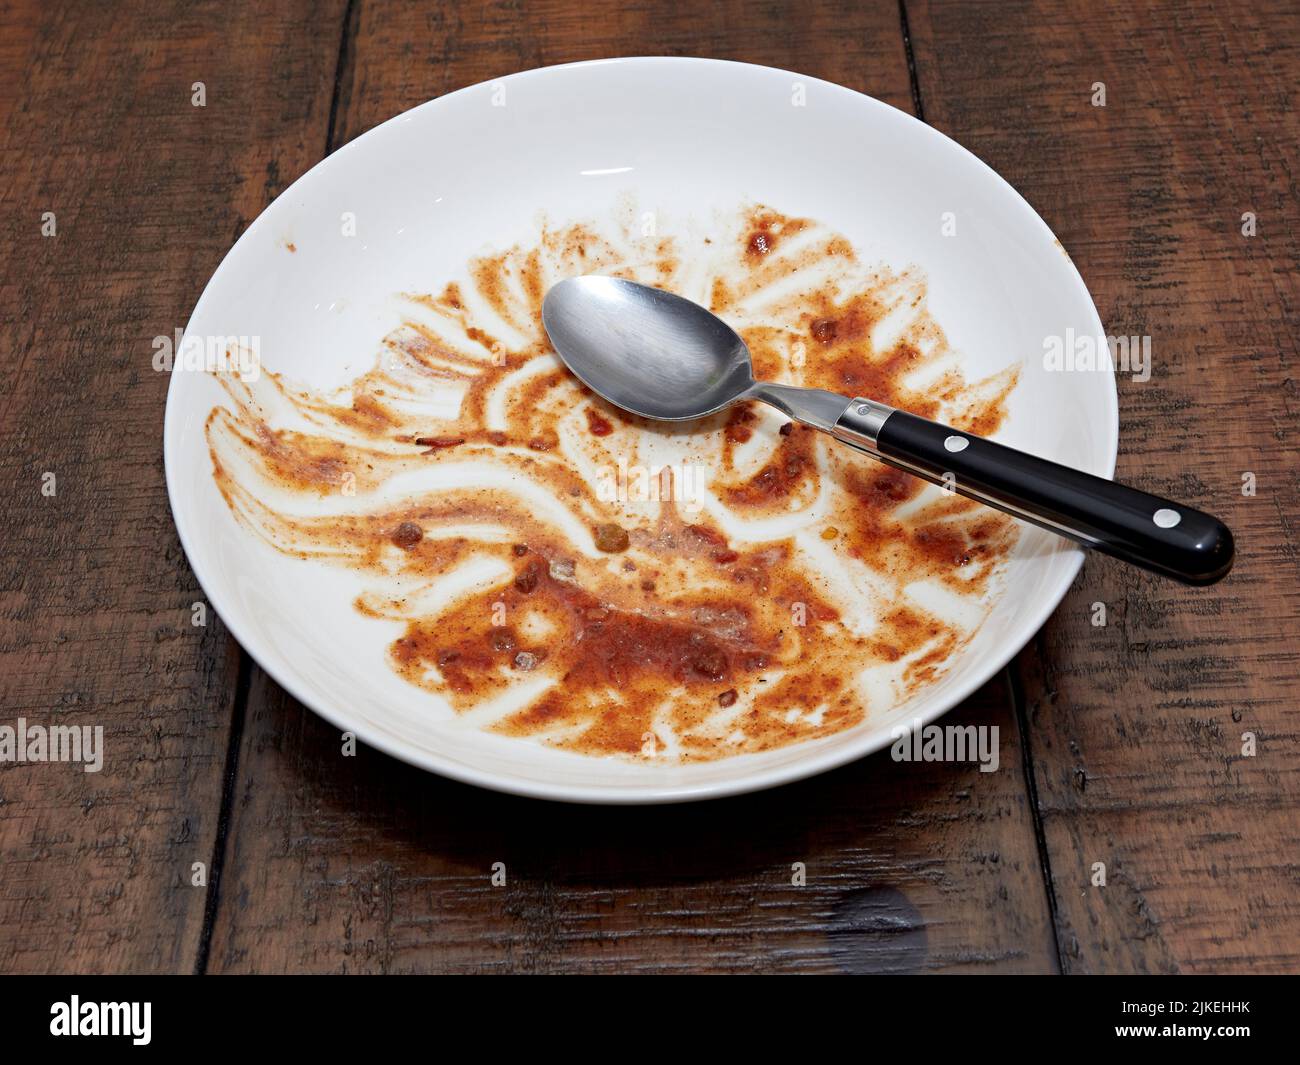 Vacíe el cuenco blanco sucio y coloque una cuchara sobre una mesa de madera después de una comida de chile o sopa espesa. Foto de stock